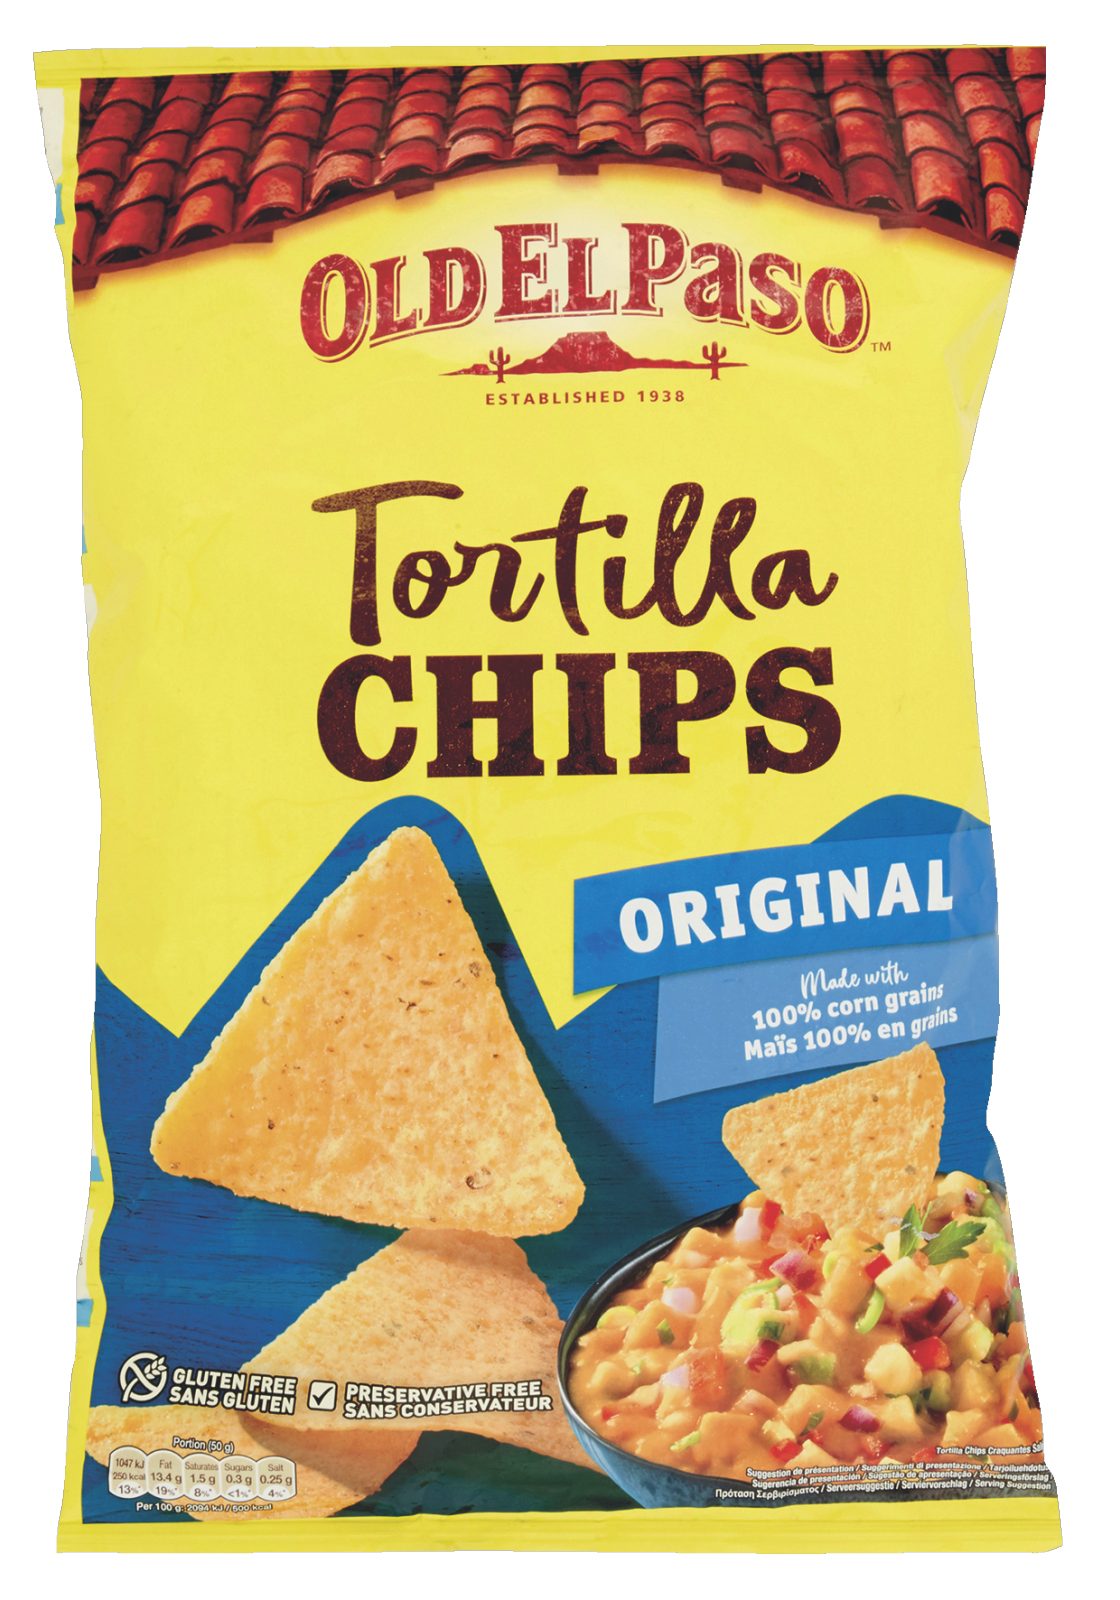 Tortilla Chips Original